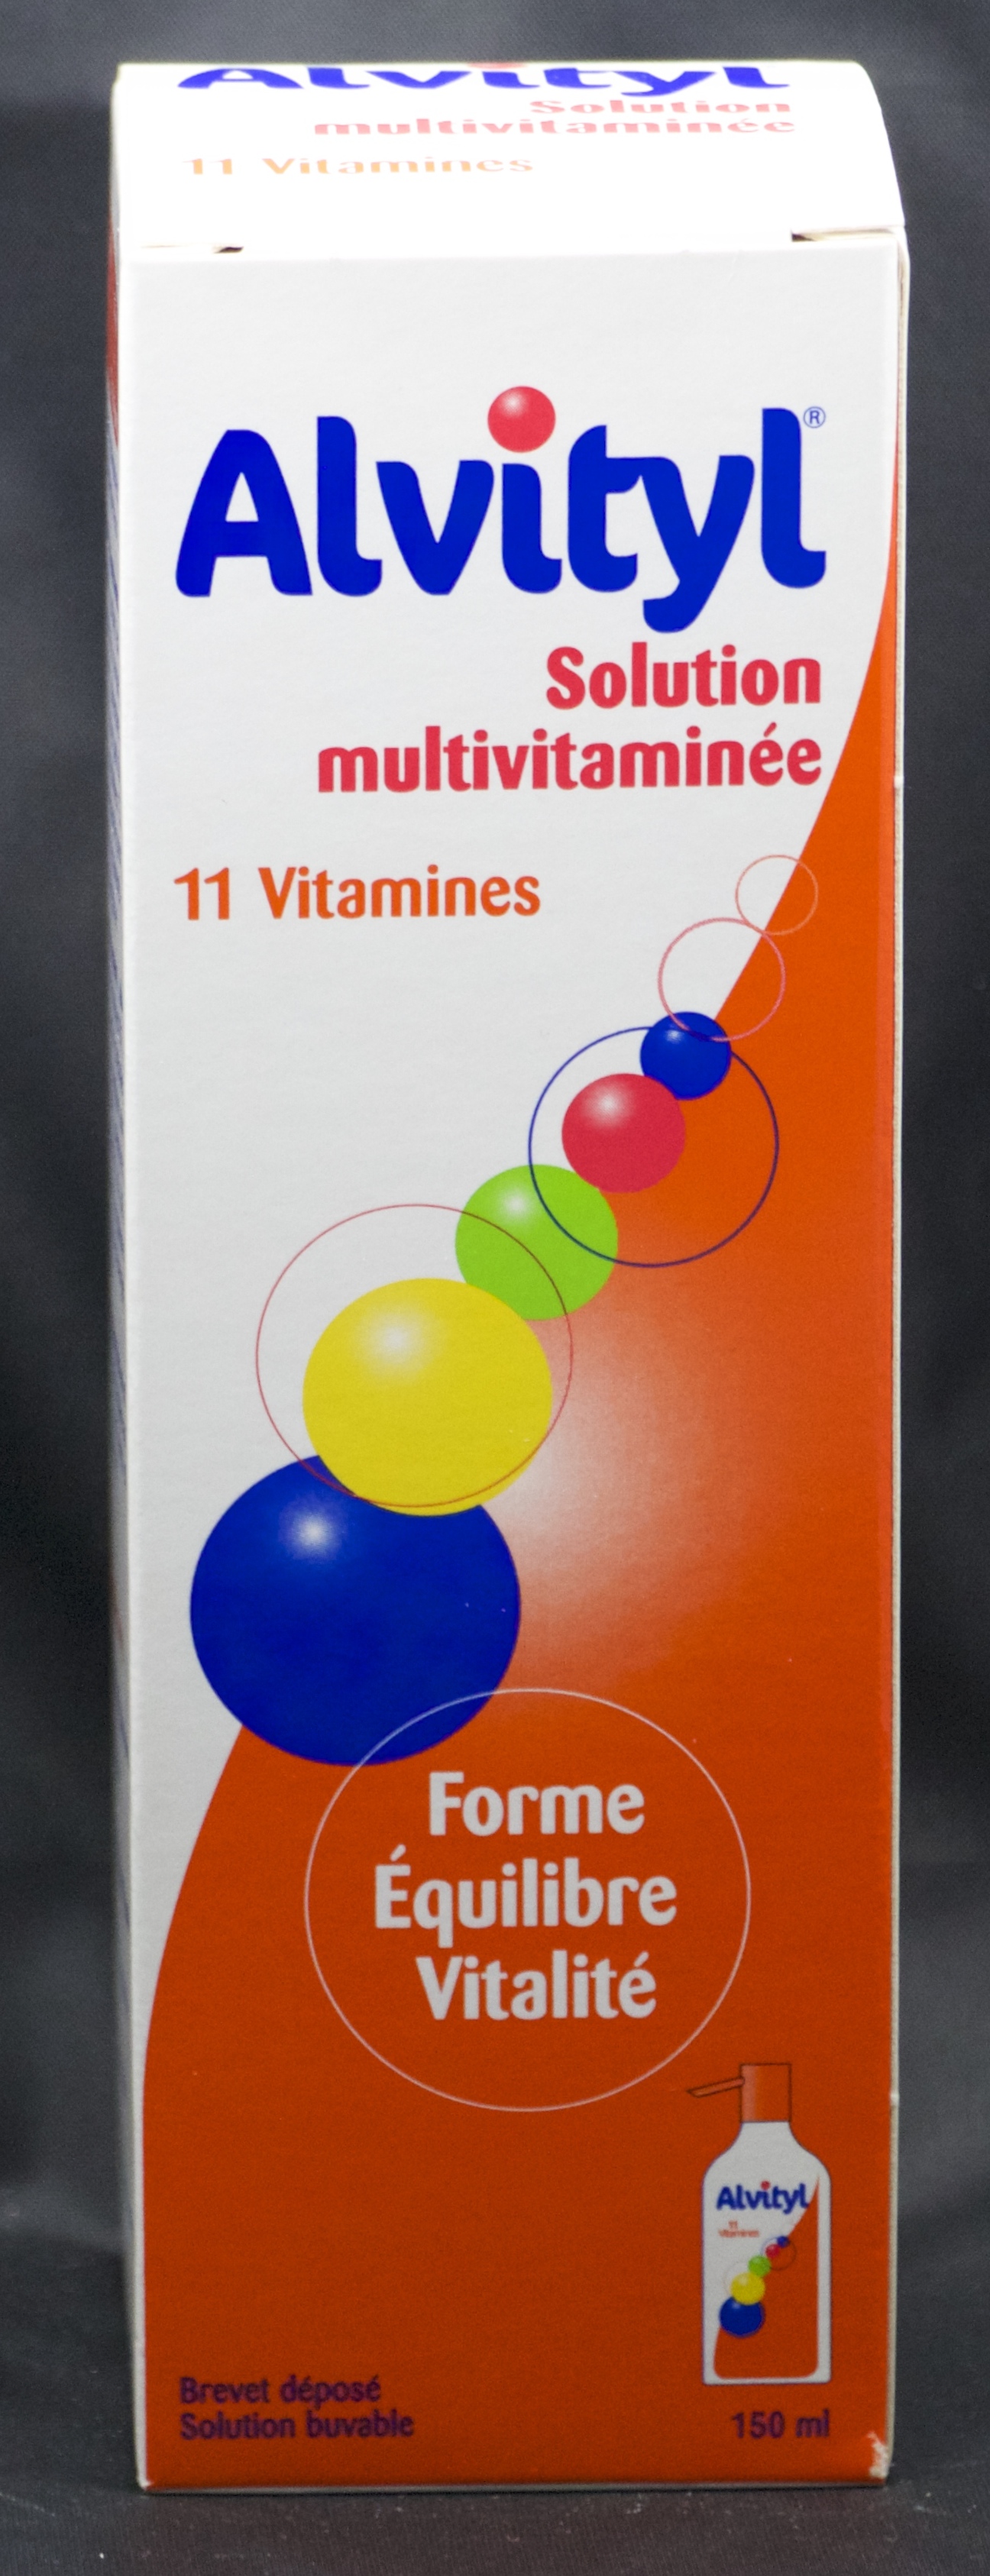 ALVITYL MULTIVITAMINES SIROP 150 ML - Multivitamines - Pharmacie